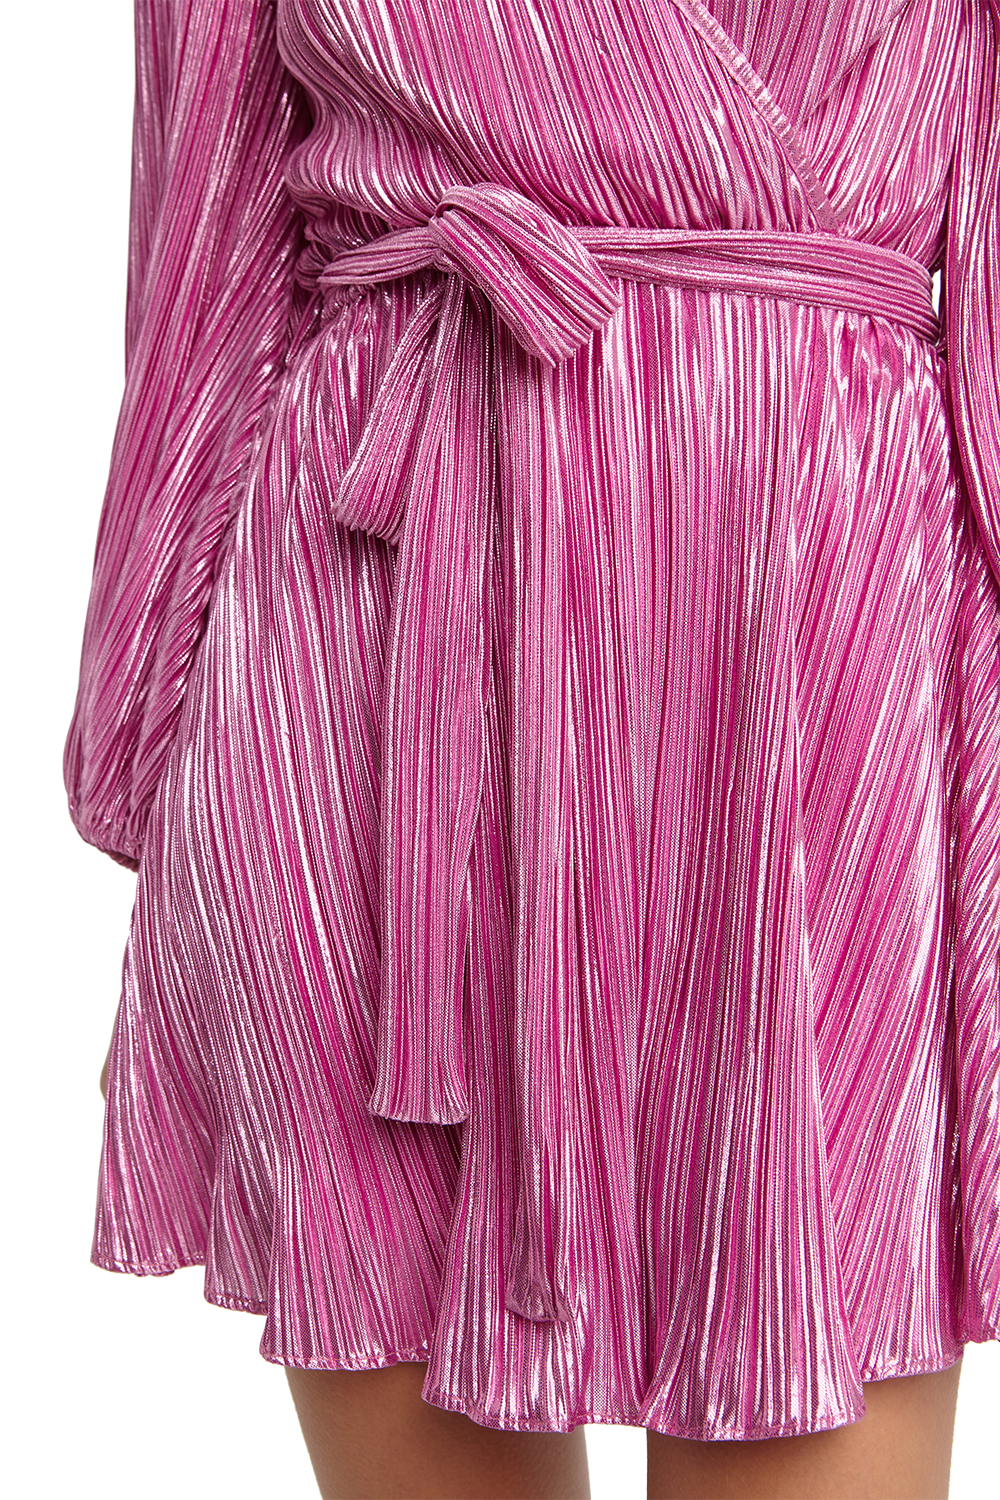 Bellissa Pleat Dress in Pink Shine | Bardot